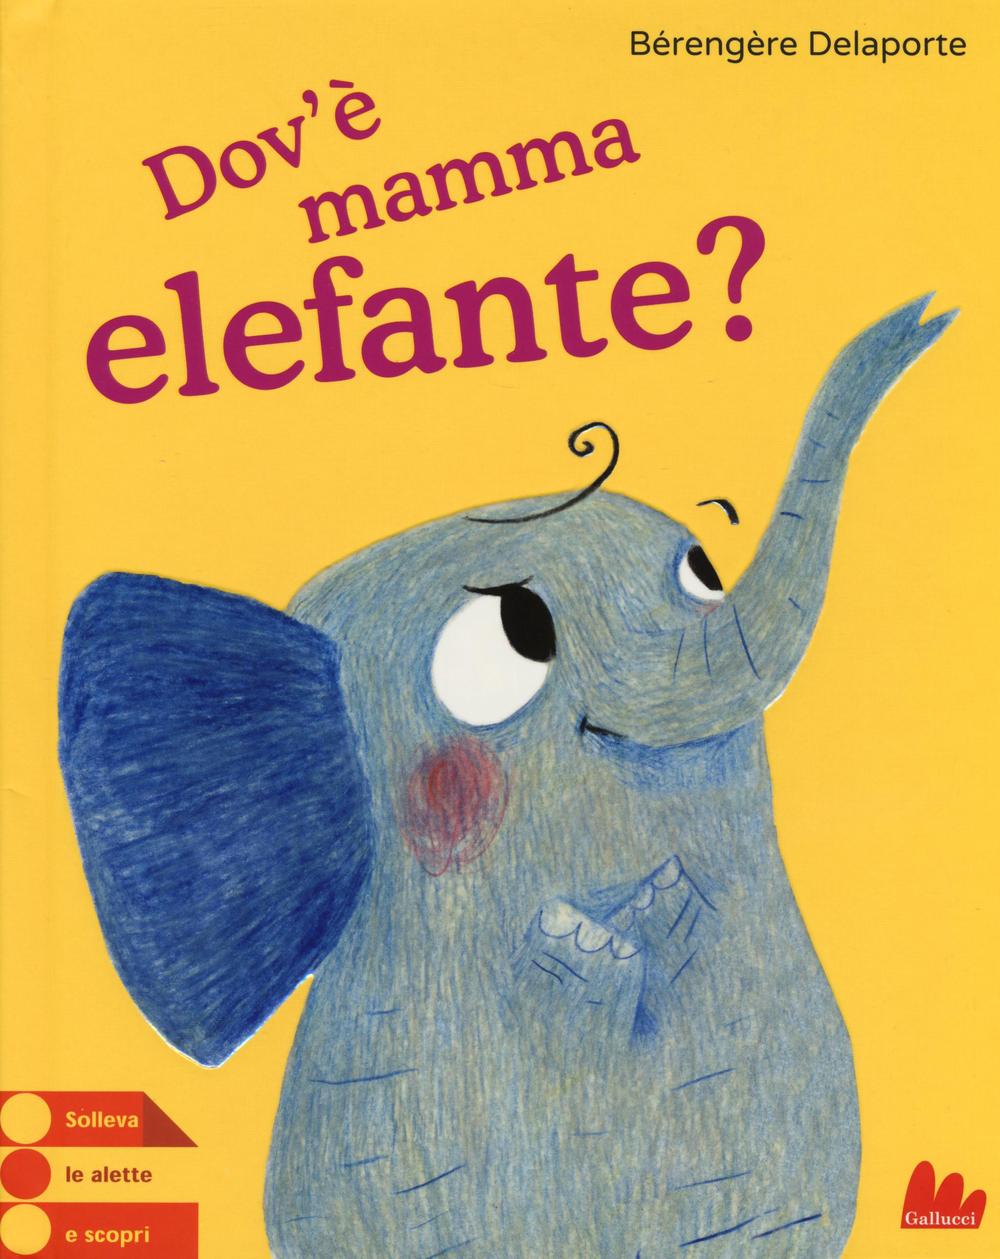 Dov'è mamma elefante?